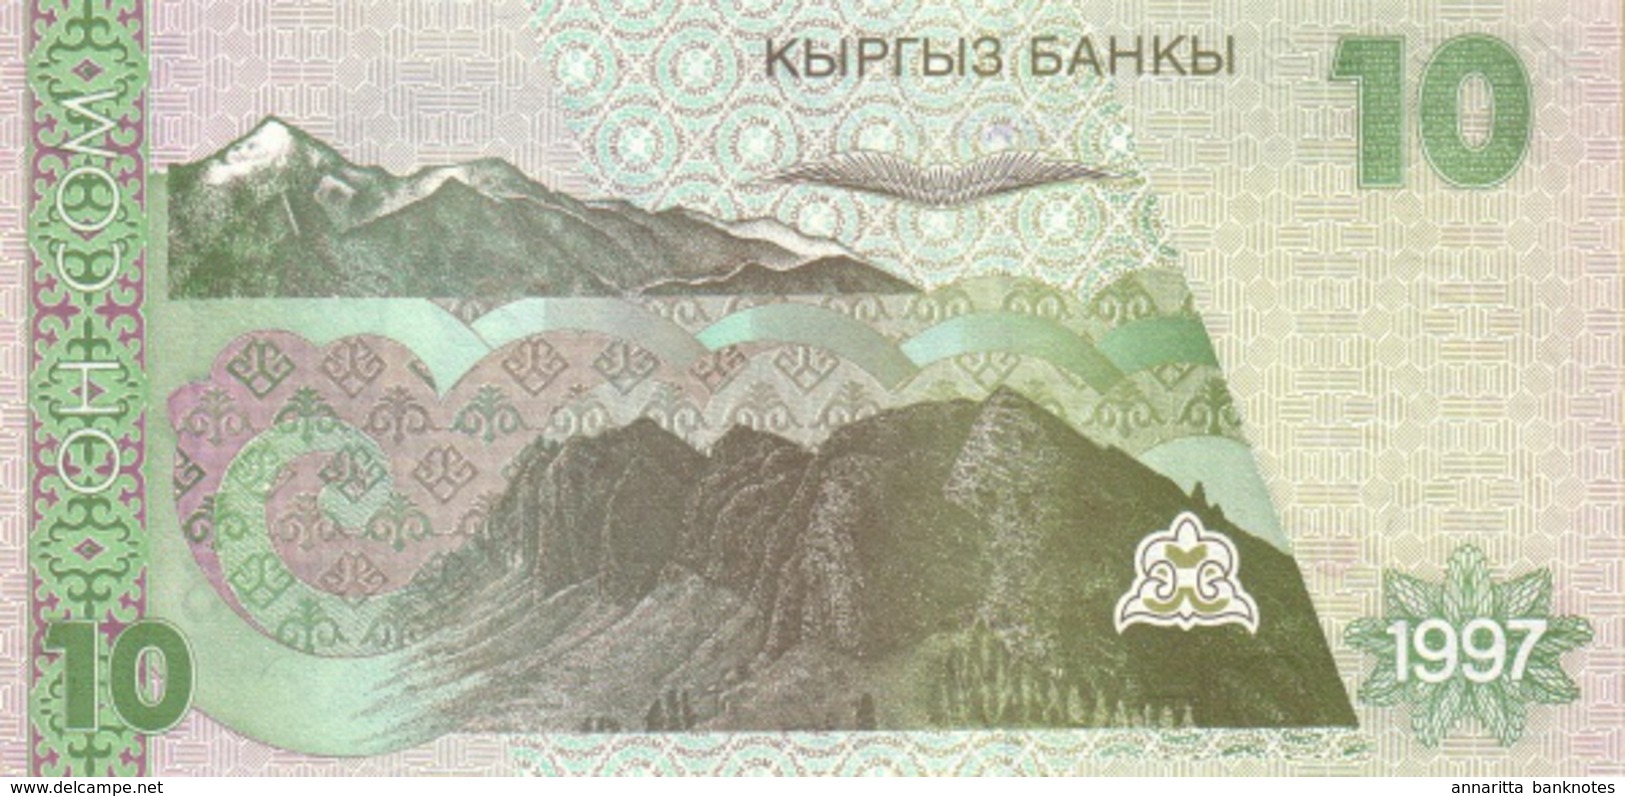 KYRGYZSTAN 10 COM (SOM) 1997 P-14 UNC [ KG212a ] - Kirghizistan